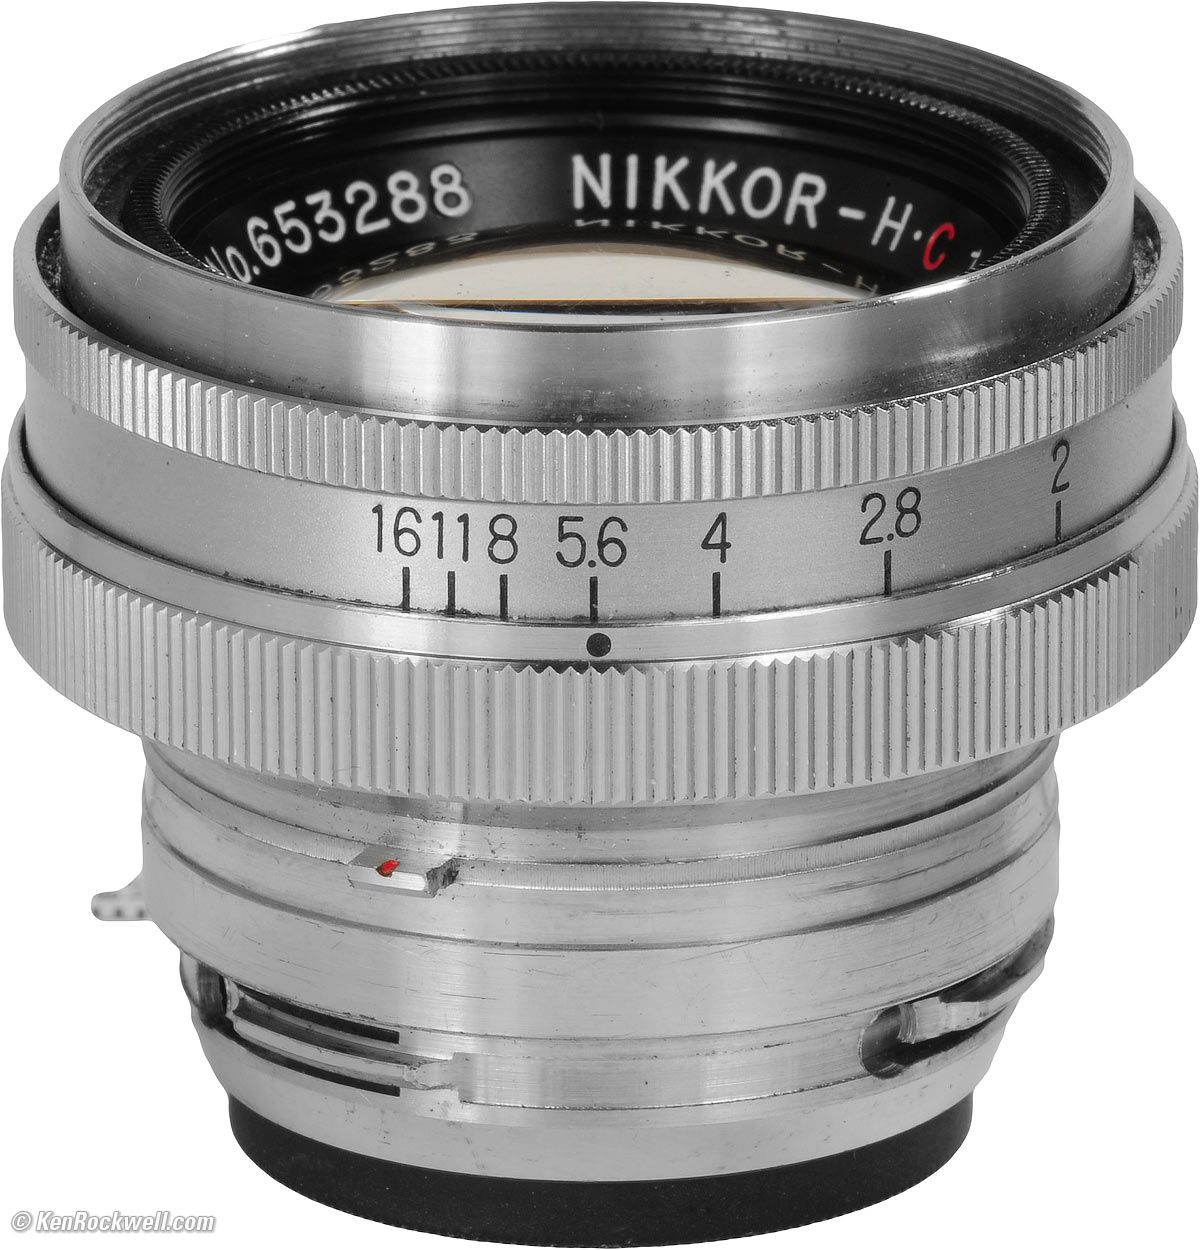 Nikon S Nikkor-H 5cm F2-